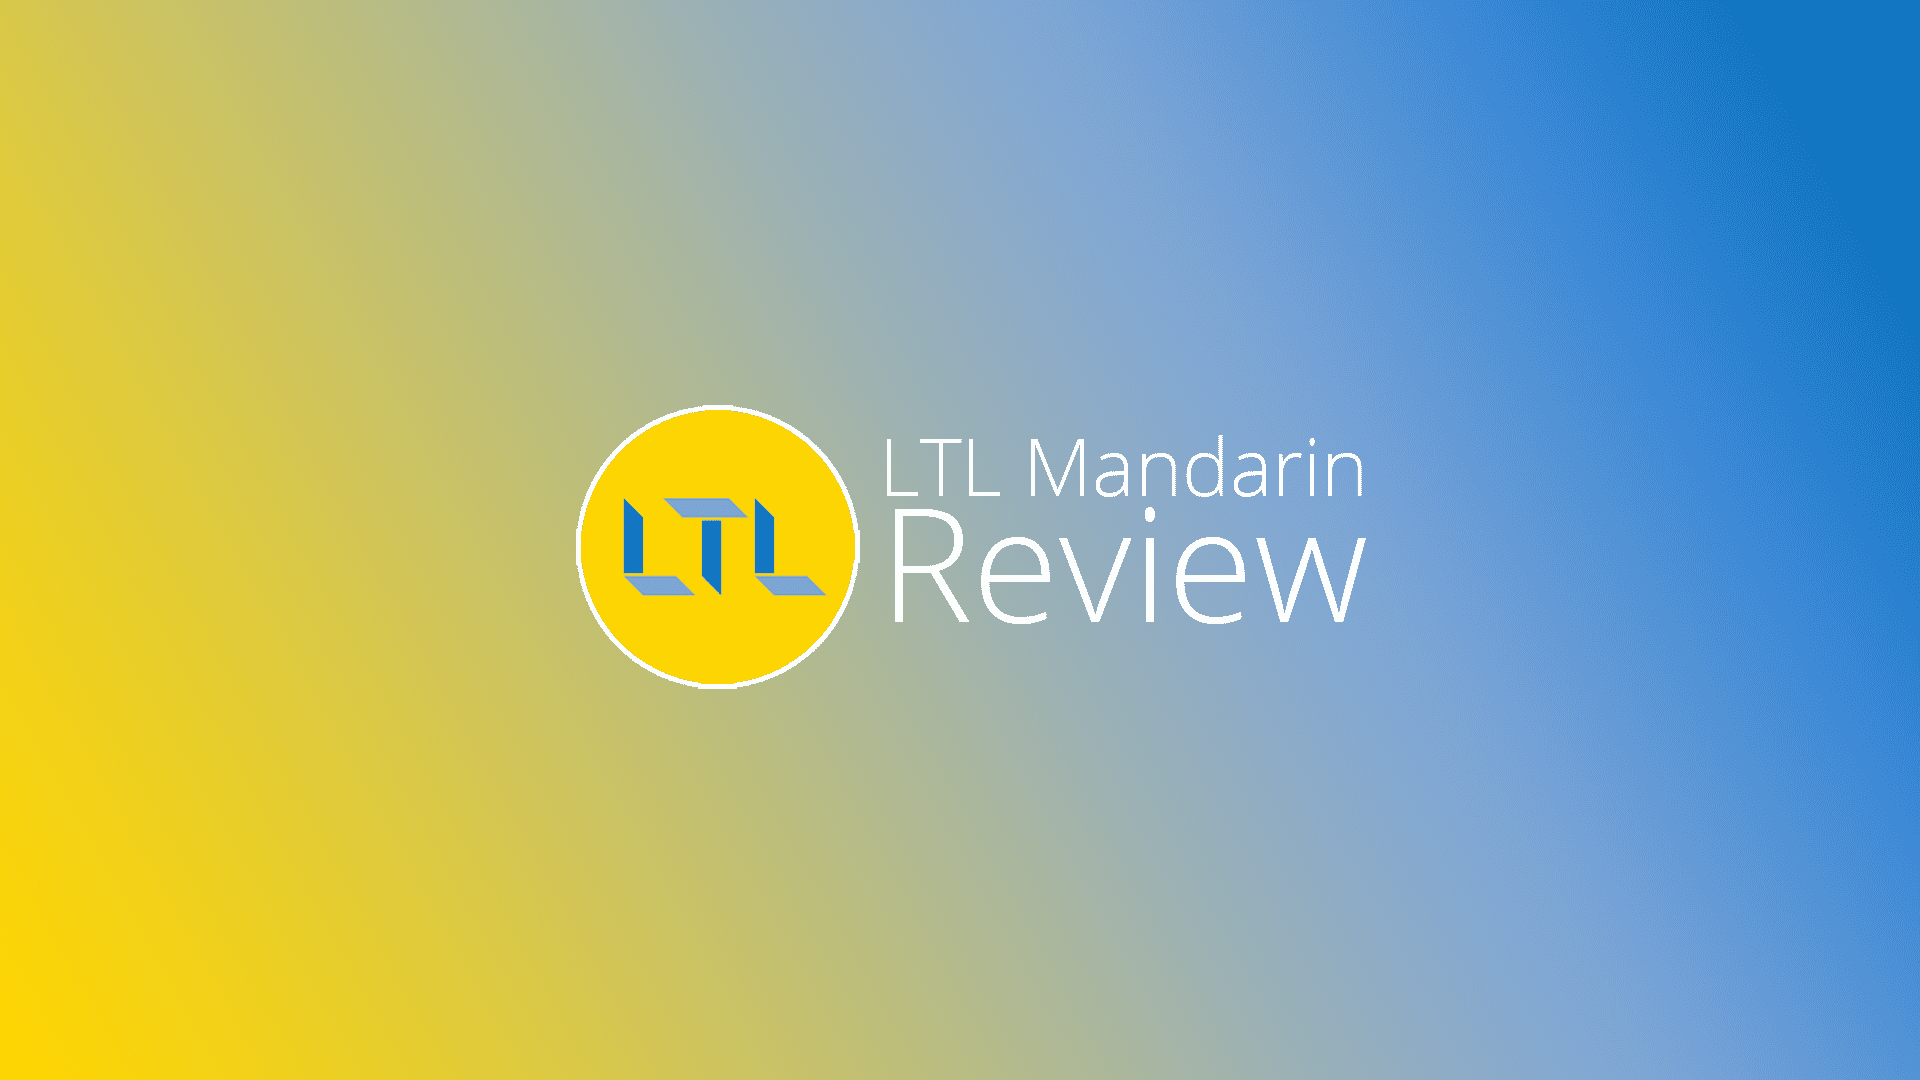 LTL Mandarin’s Flexi Classes: A review